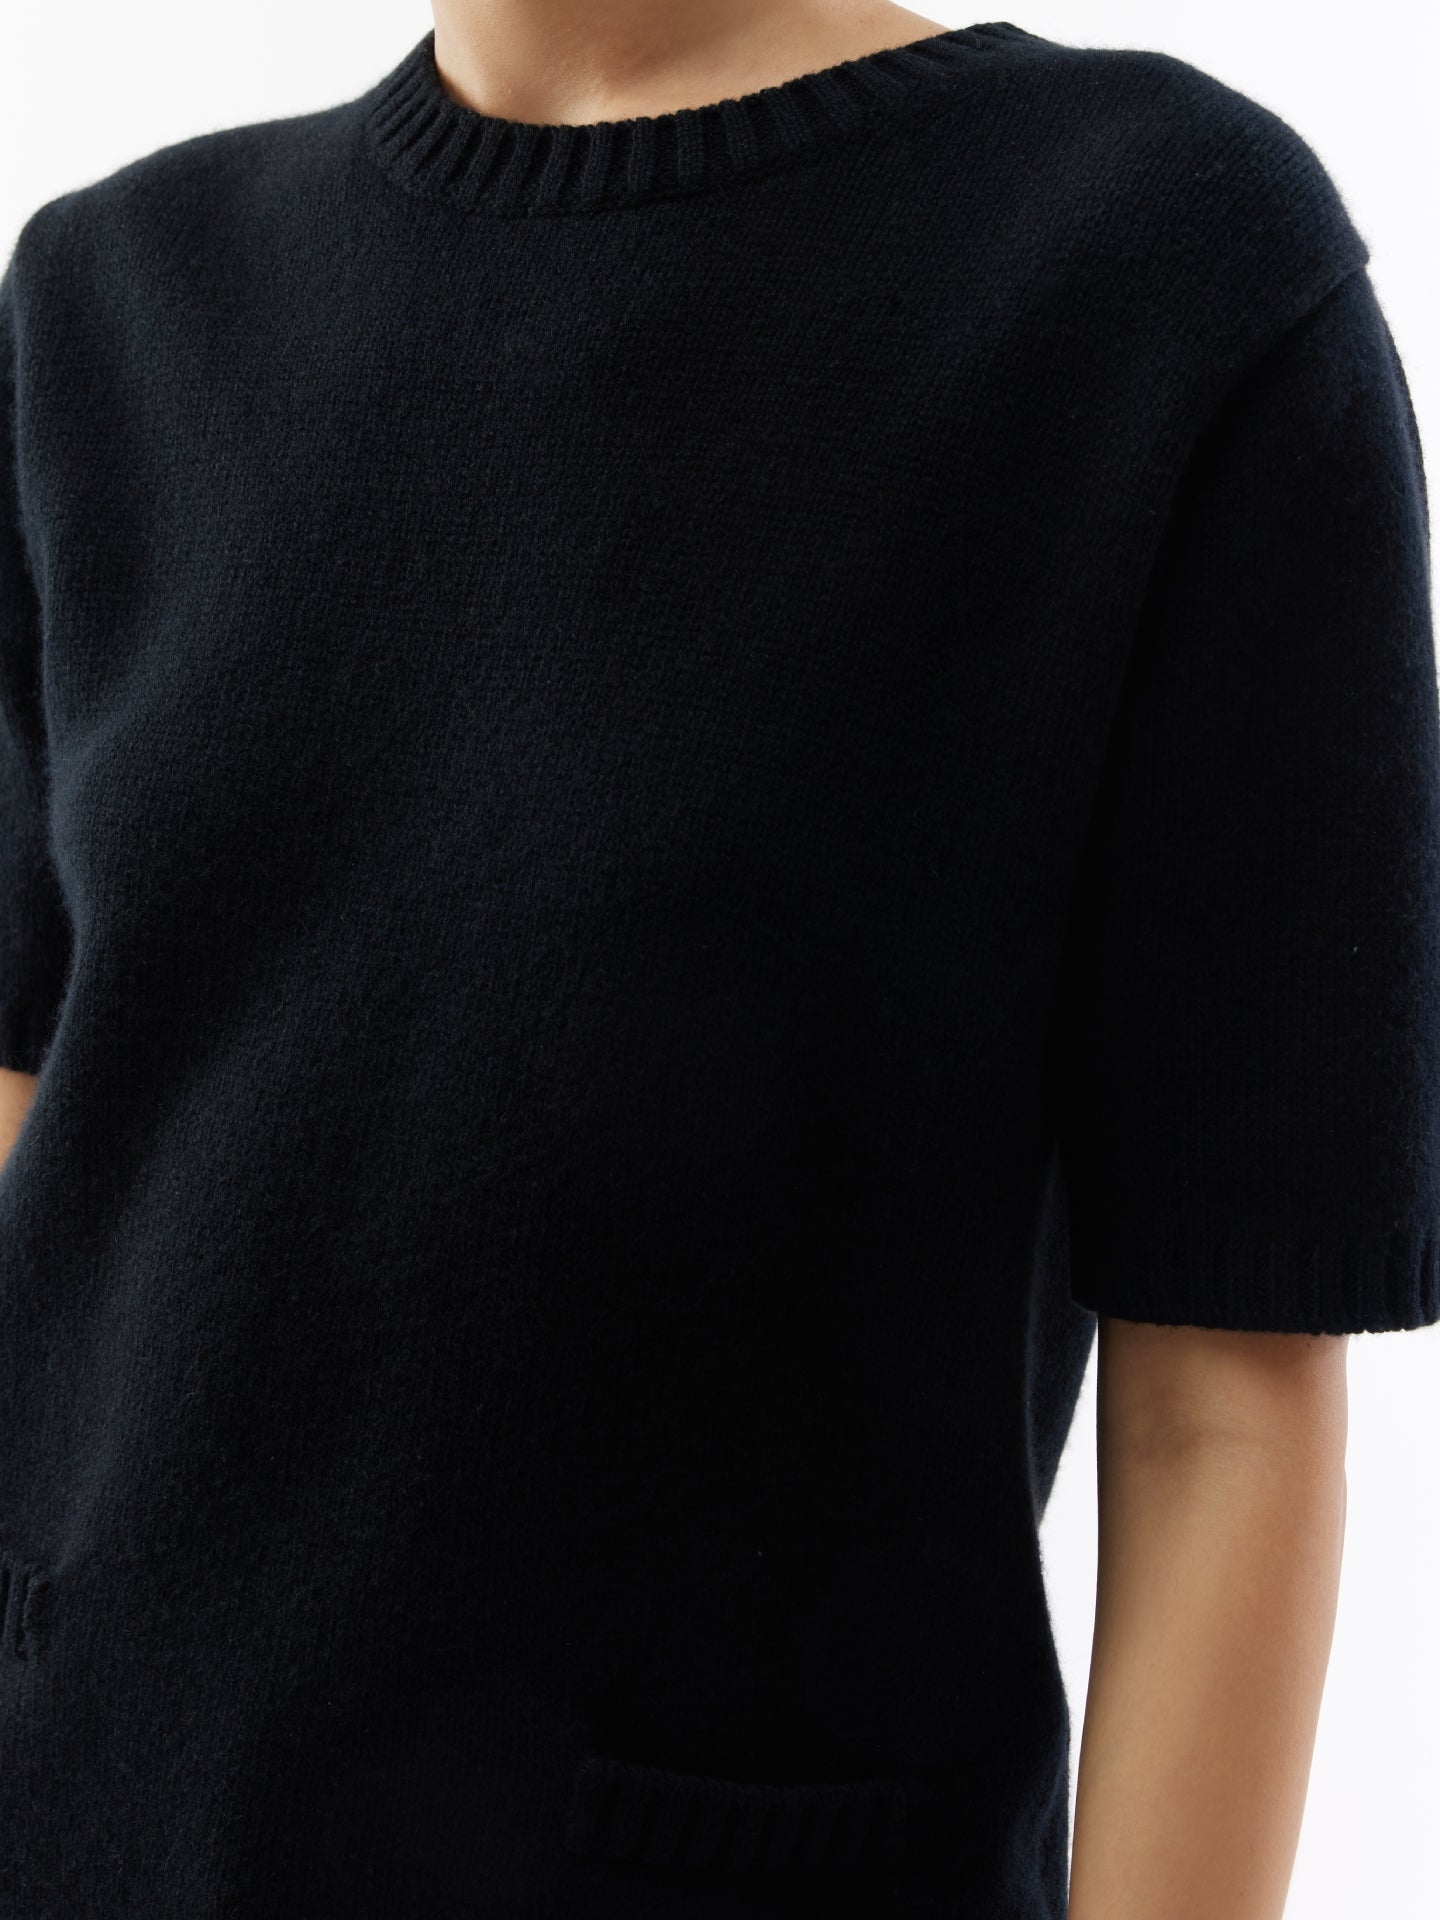 T-shirt à col en C en cachemire noir - Gobi Cashmere